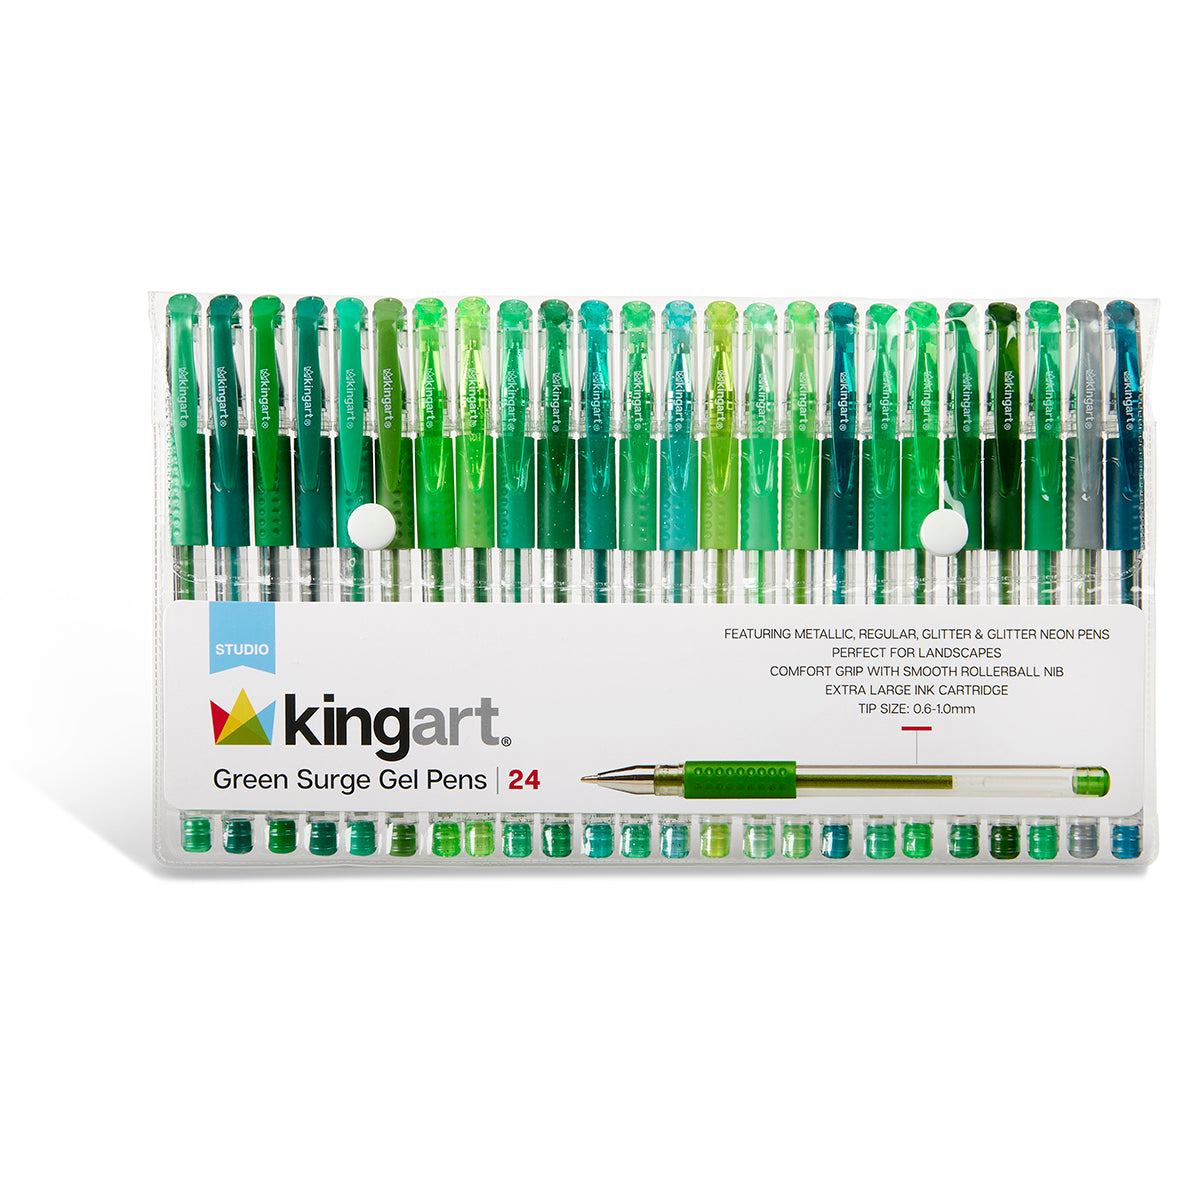 Kingart 400-12 Glitter Rollerball Gel Pens only $3.98